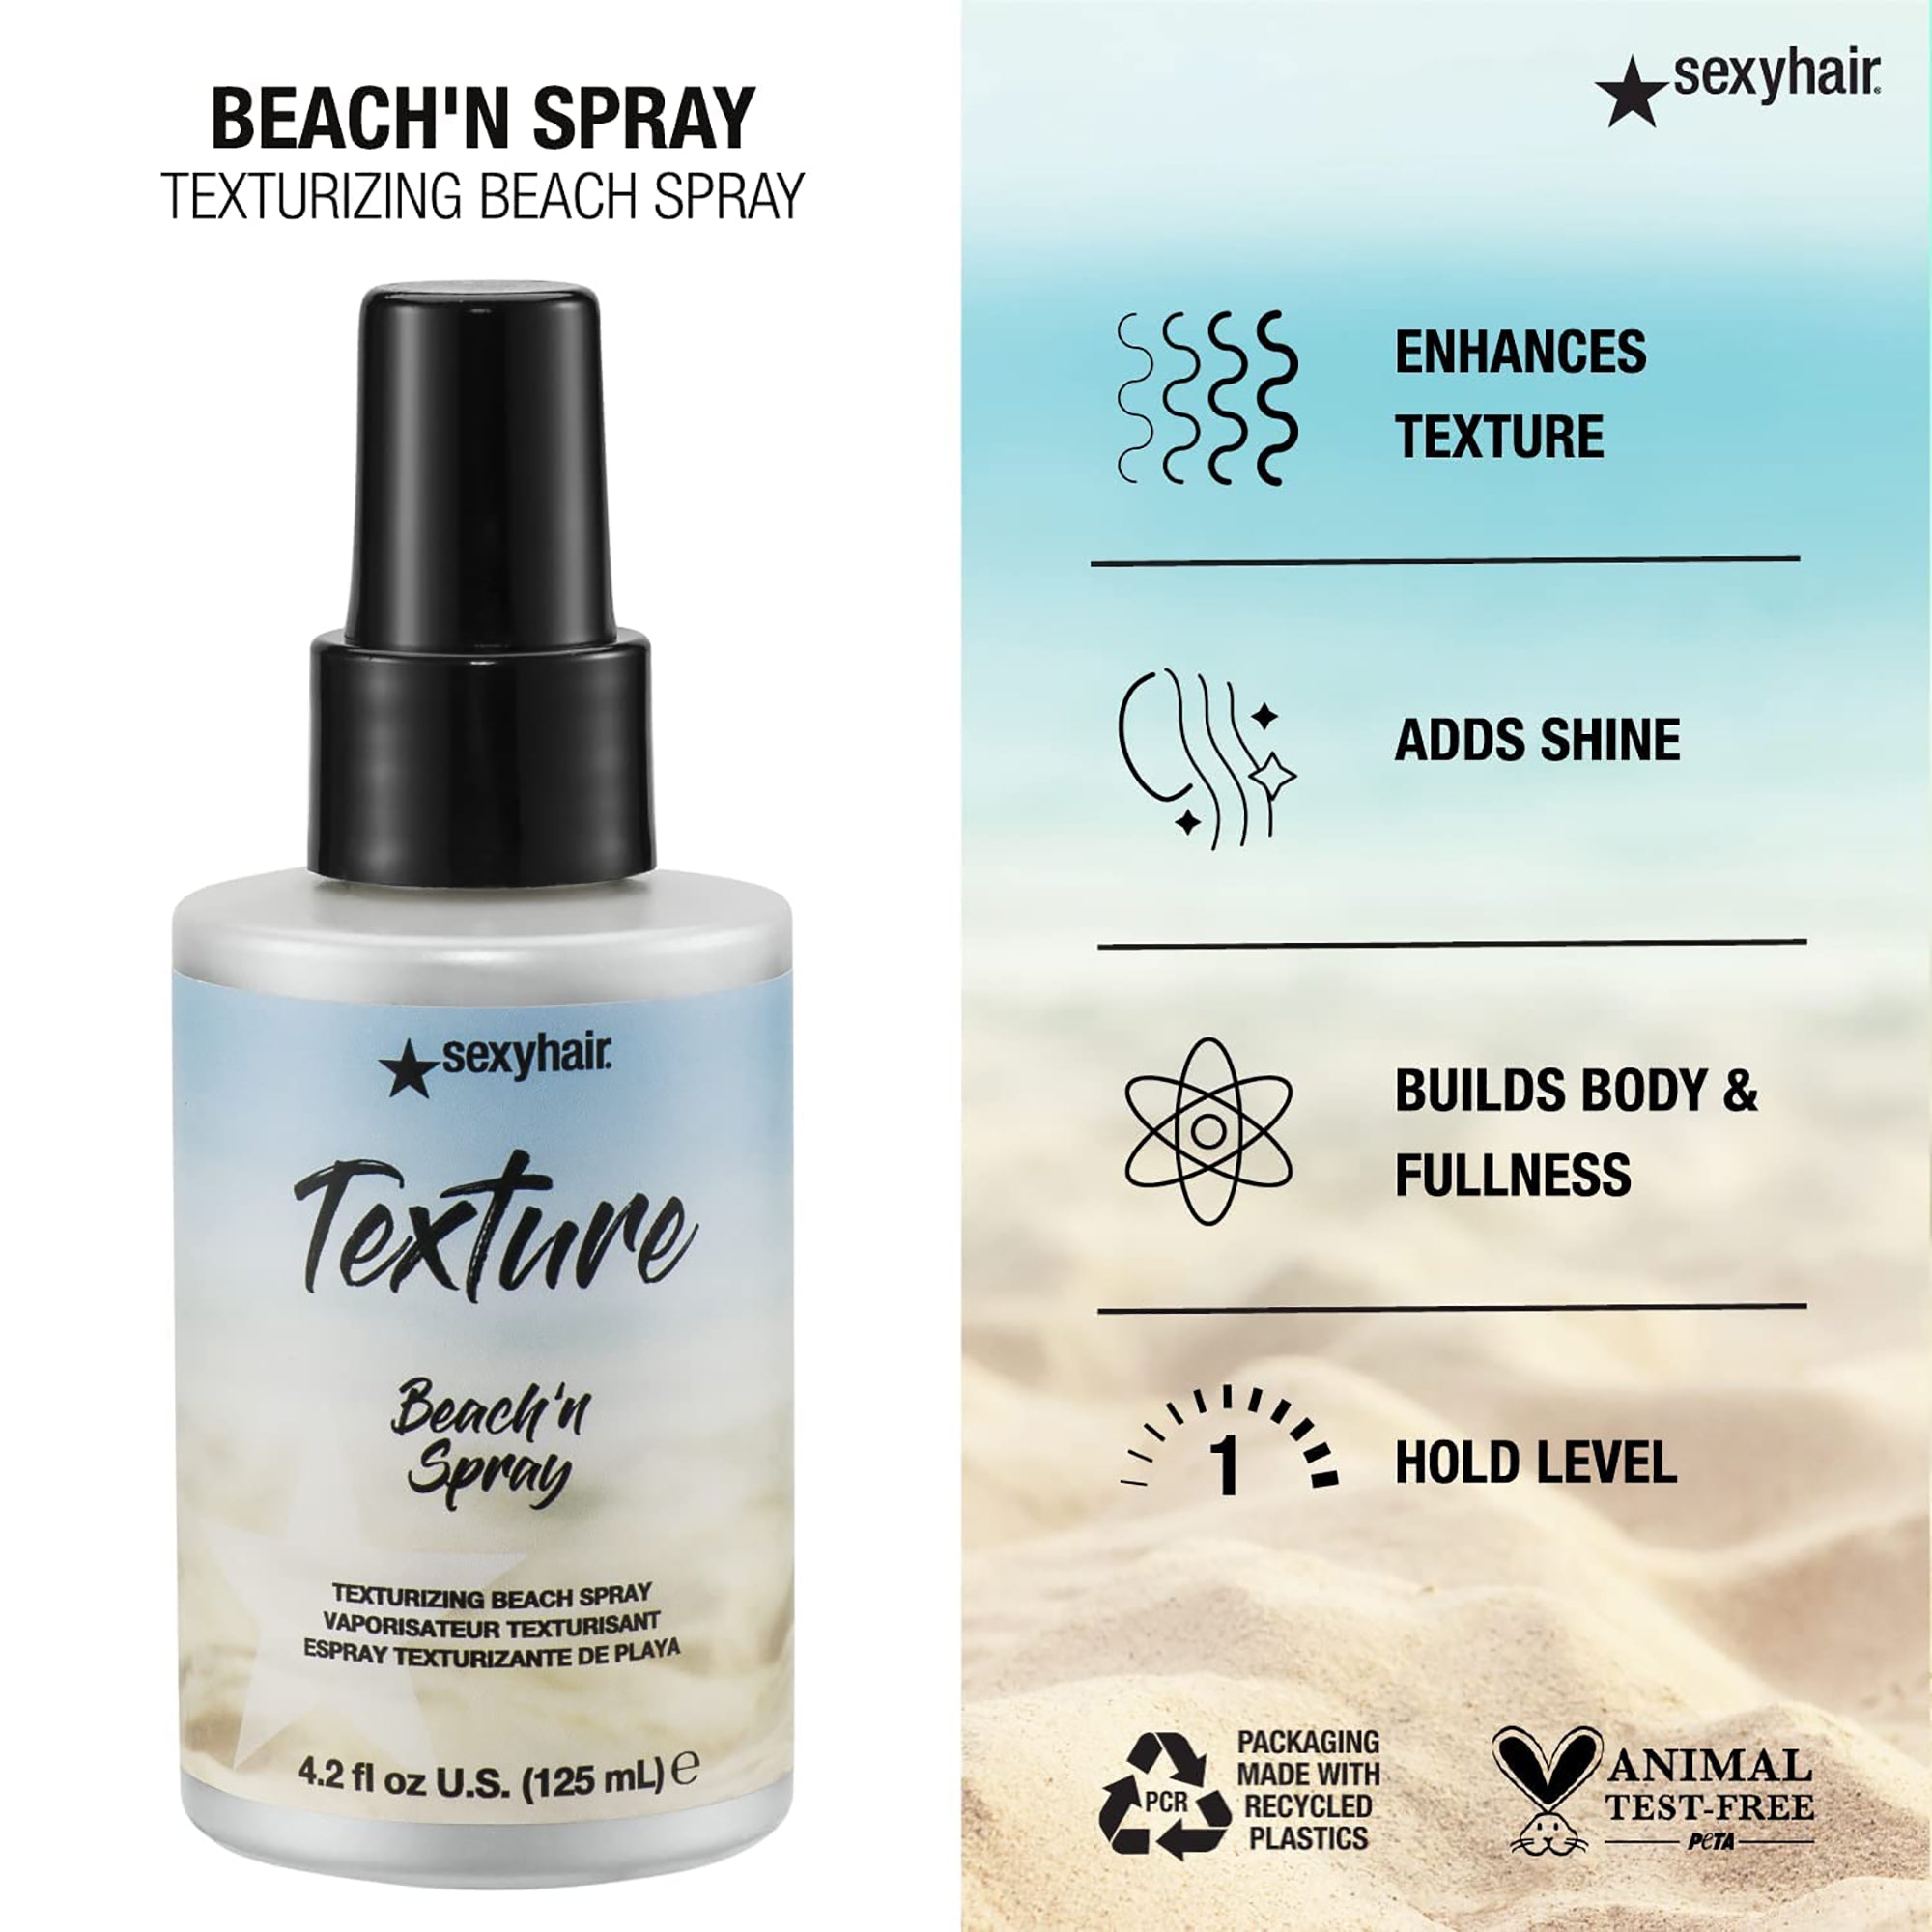 Sexy Hair Texture SexyHair Beach'n Spray Texturizing Beach Spray / 4.2